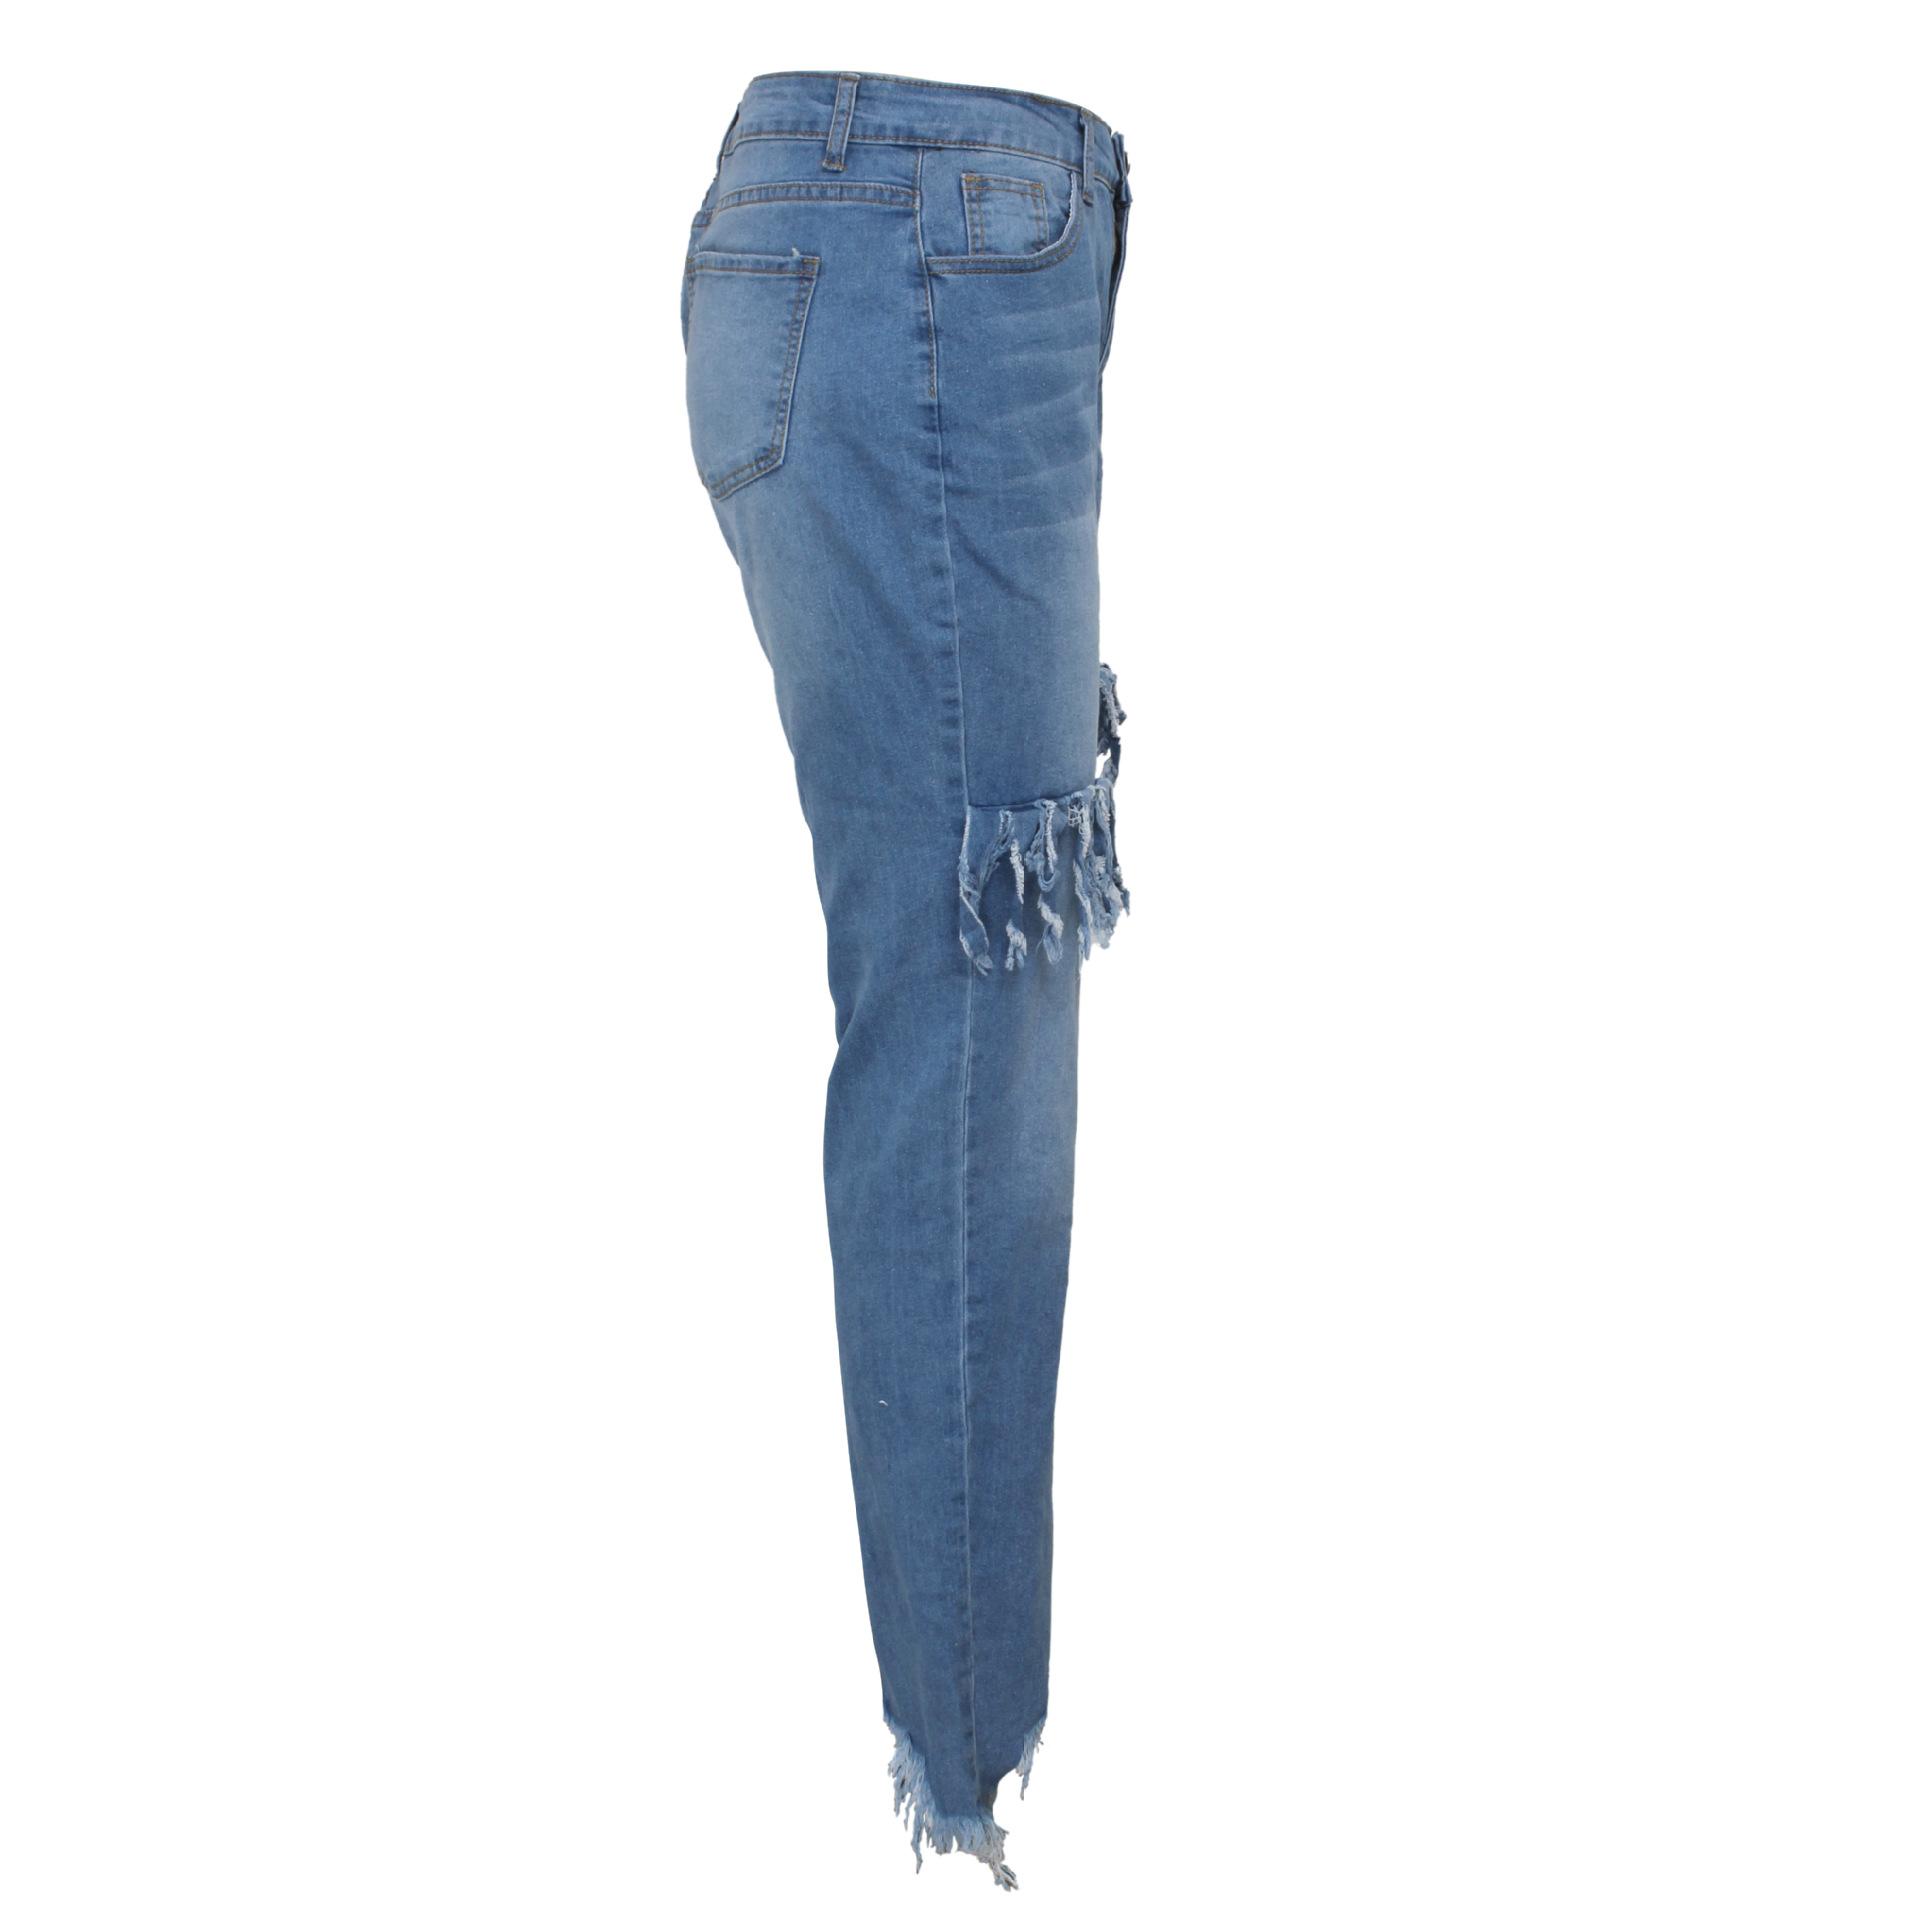 Изображение товара: Женские повседневные джинсы с высокой талией, Винтажные эластичные облегающие джинсы с эффектом потертости, модные джинсовые брюки с бахромой, женские джинсовые брюки-карандаш